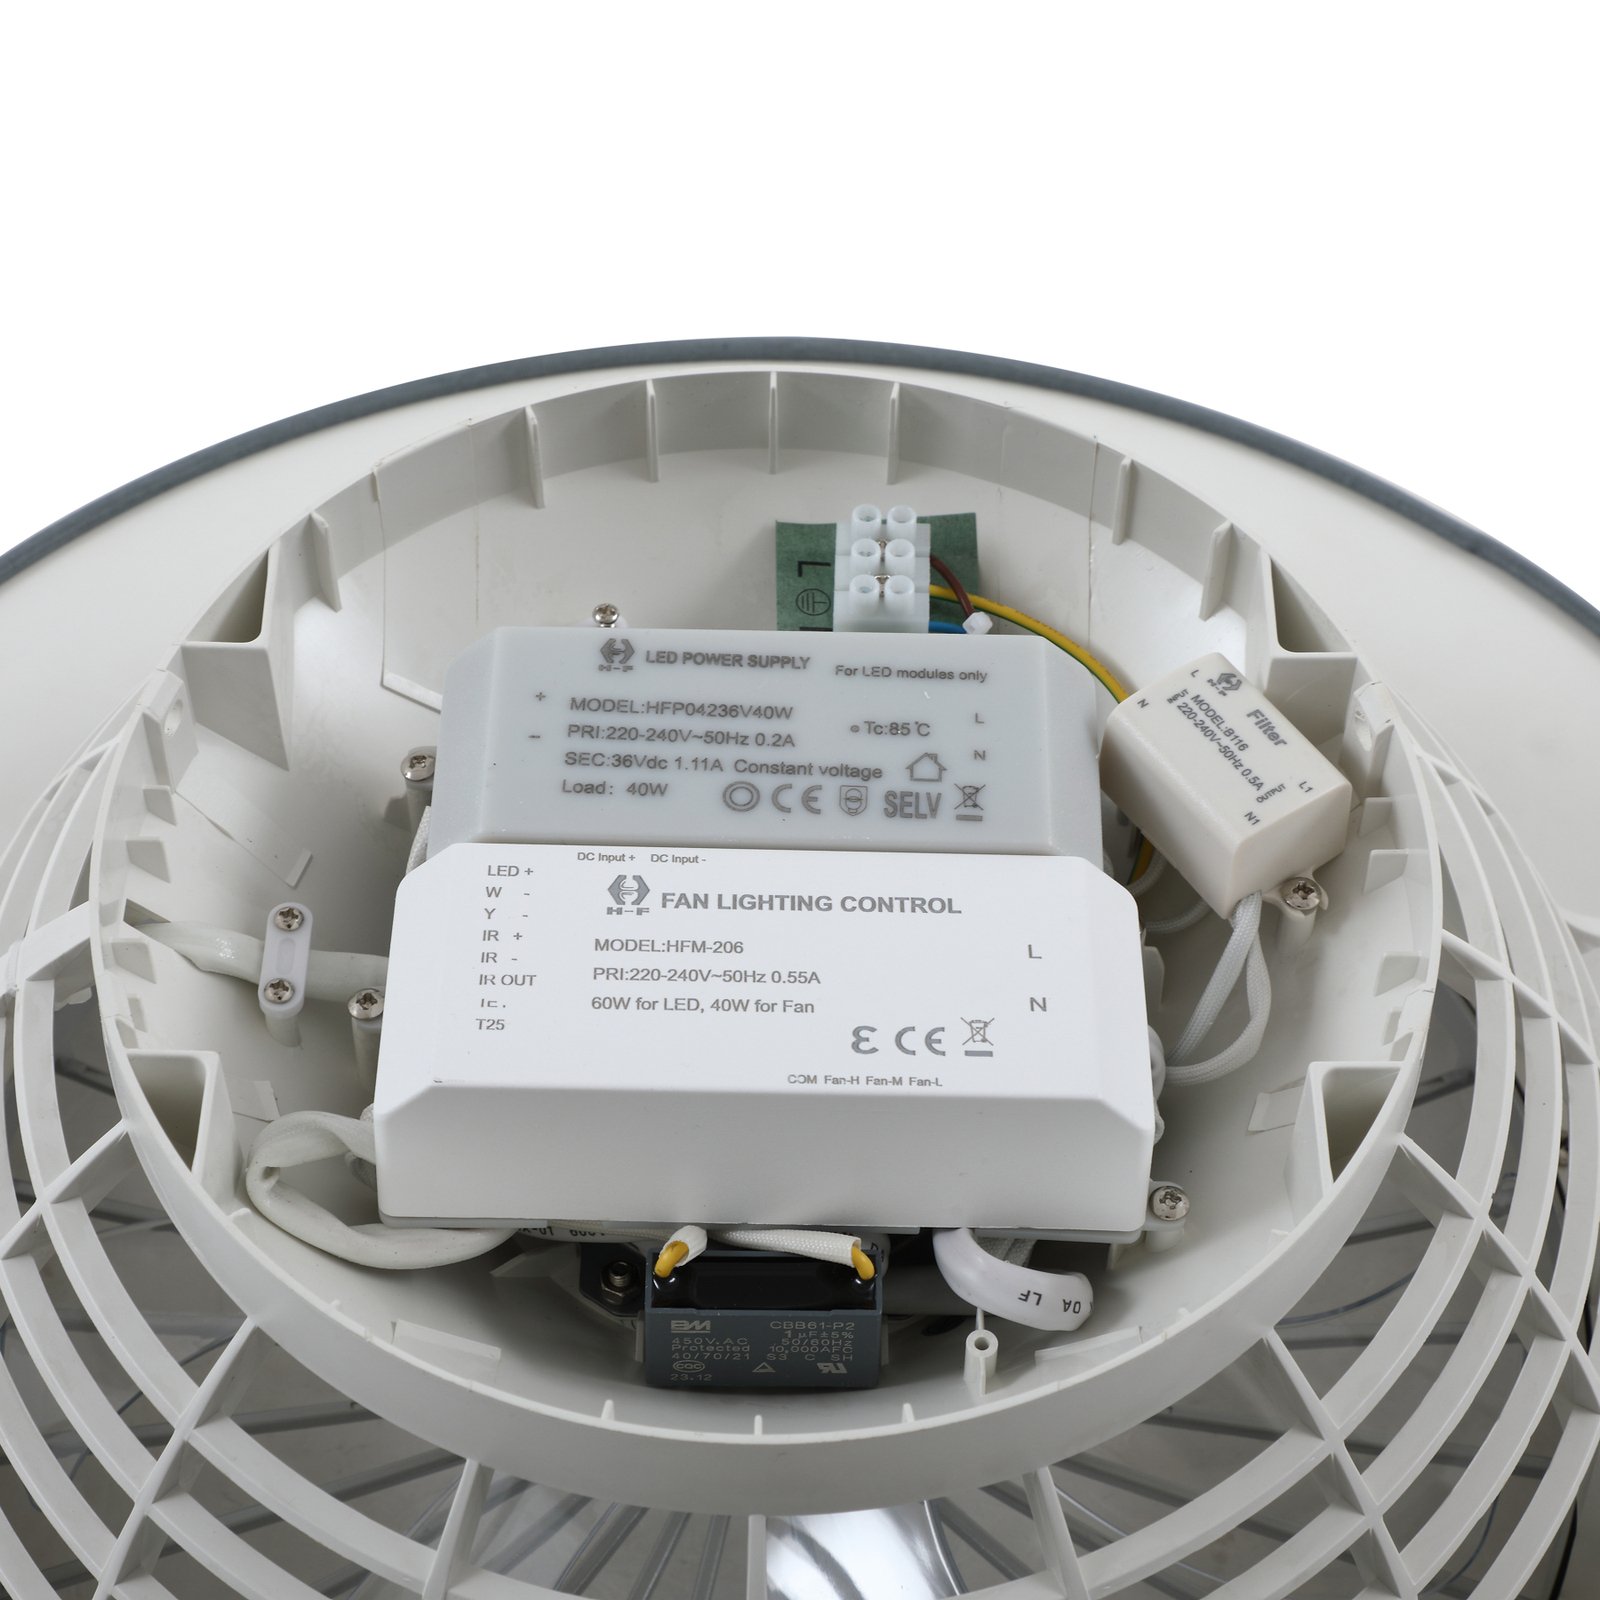 Lindby LED mennyezeti ventilátor Mace, szürke, csendes, CCT